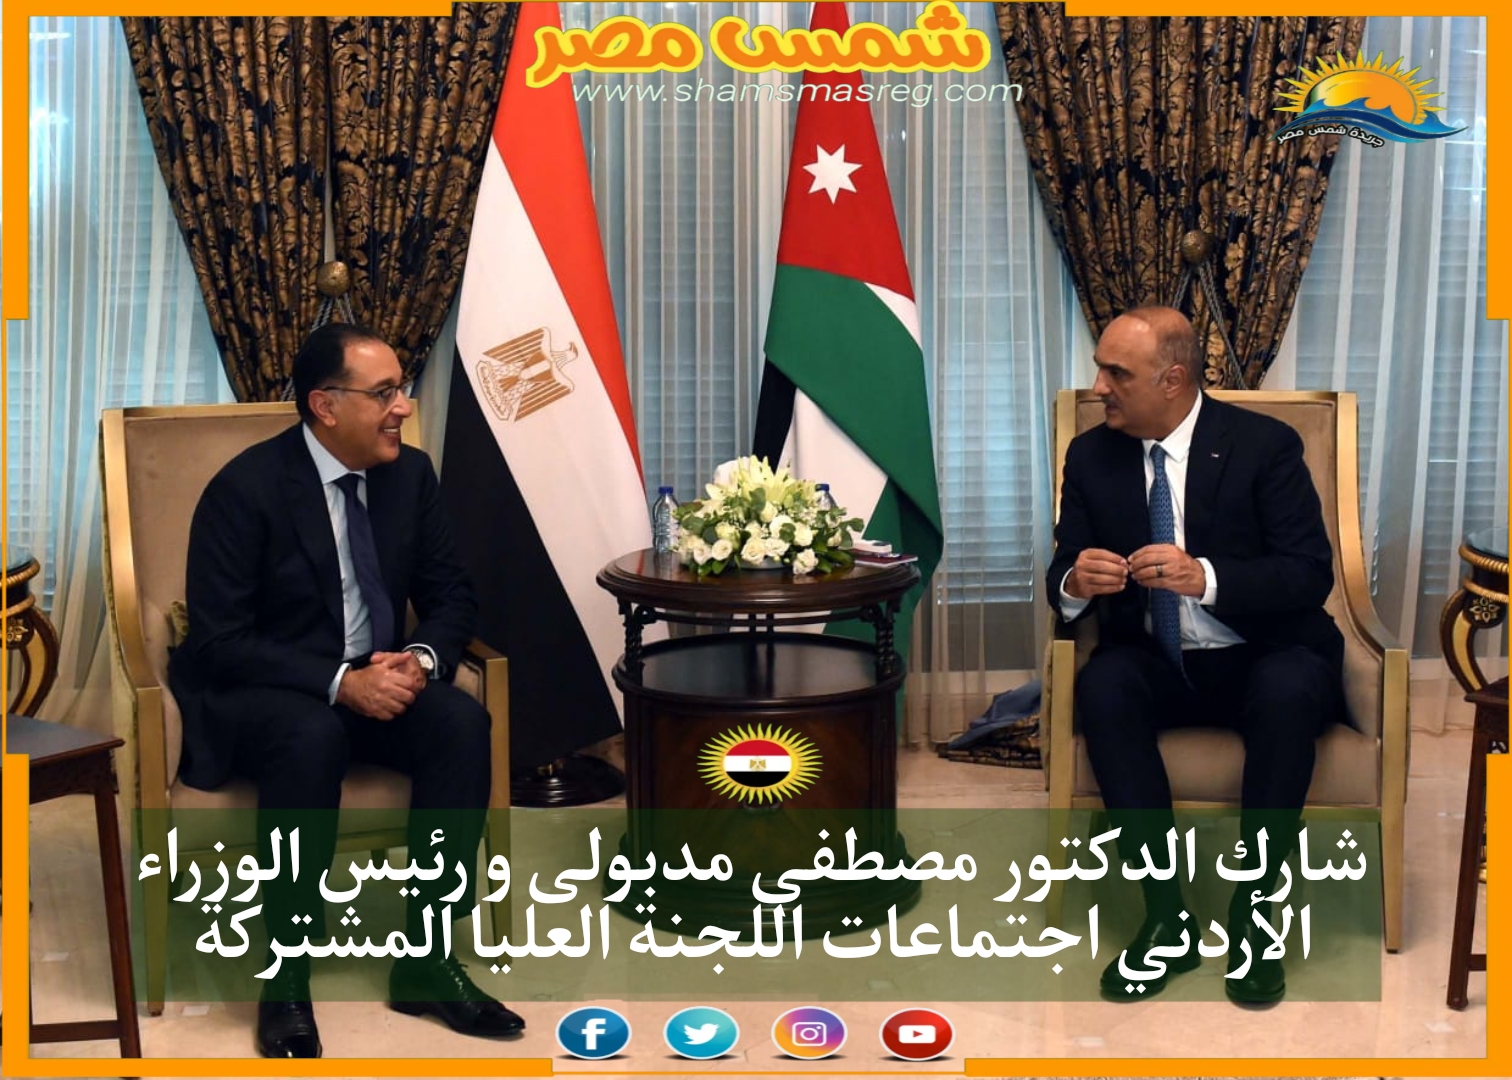 شارك الدكتور مصطفى مدبولى و رئيس الوزراء الأردني اجتماعات اللجنة العليا المشتركة